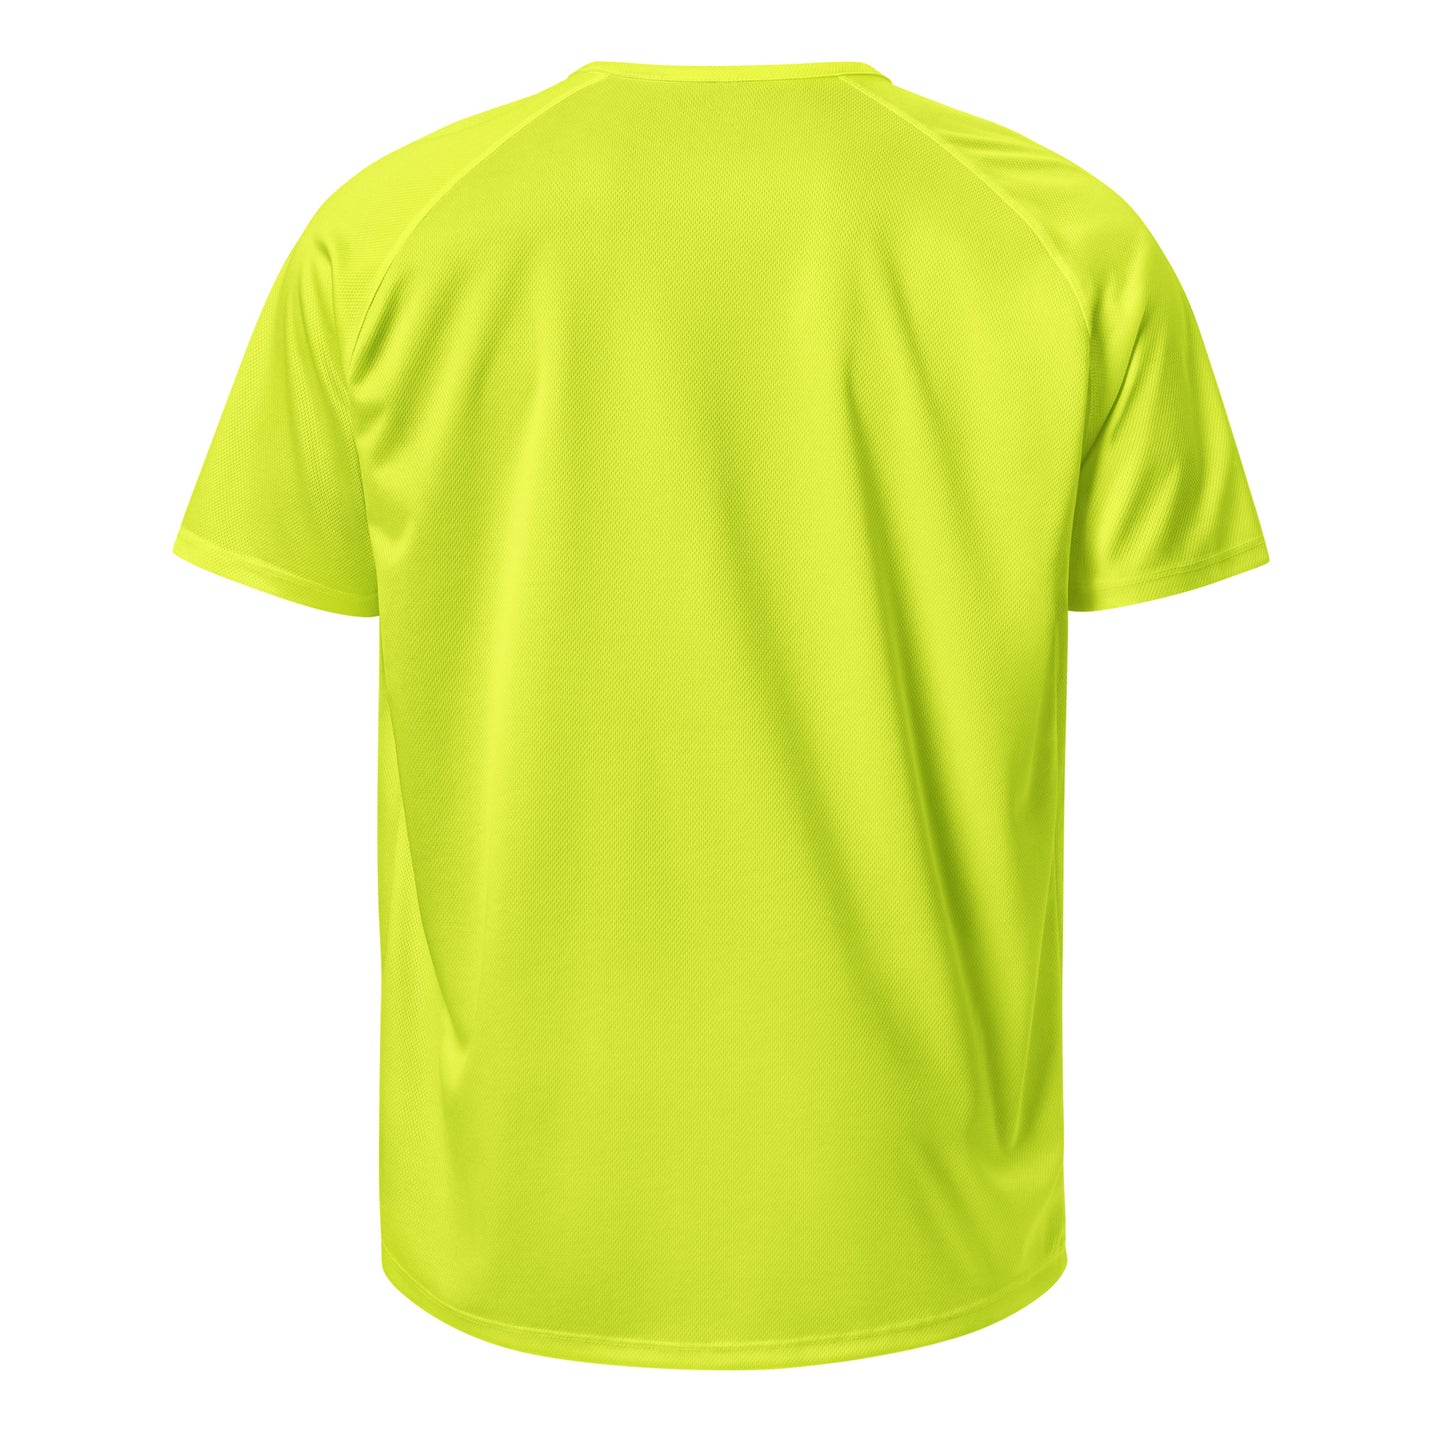 E141 - กีฬา/ผ้าระบายอากาศ (วิบากชนะ/ผู้หญิง : สีเหลือง)